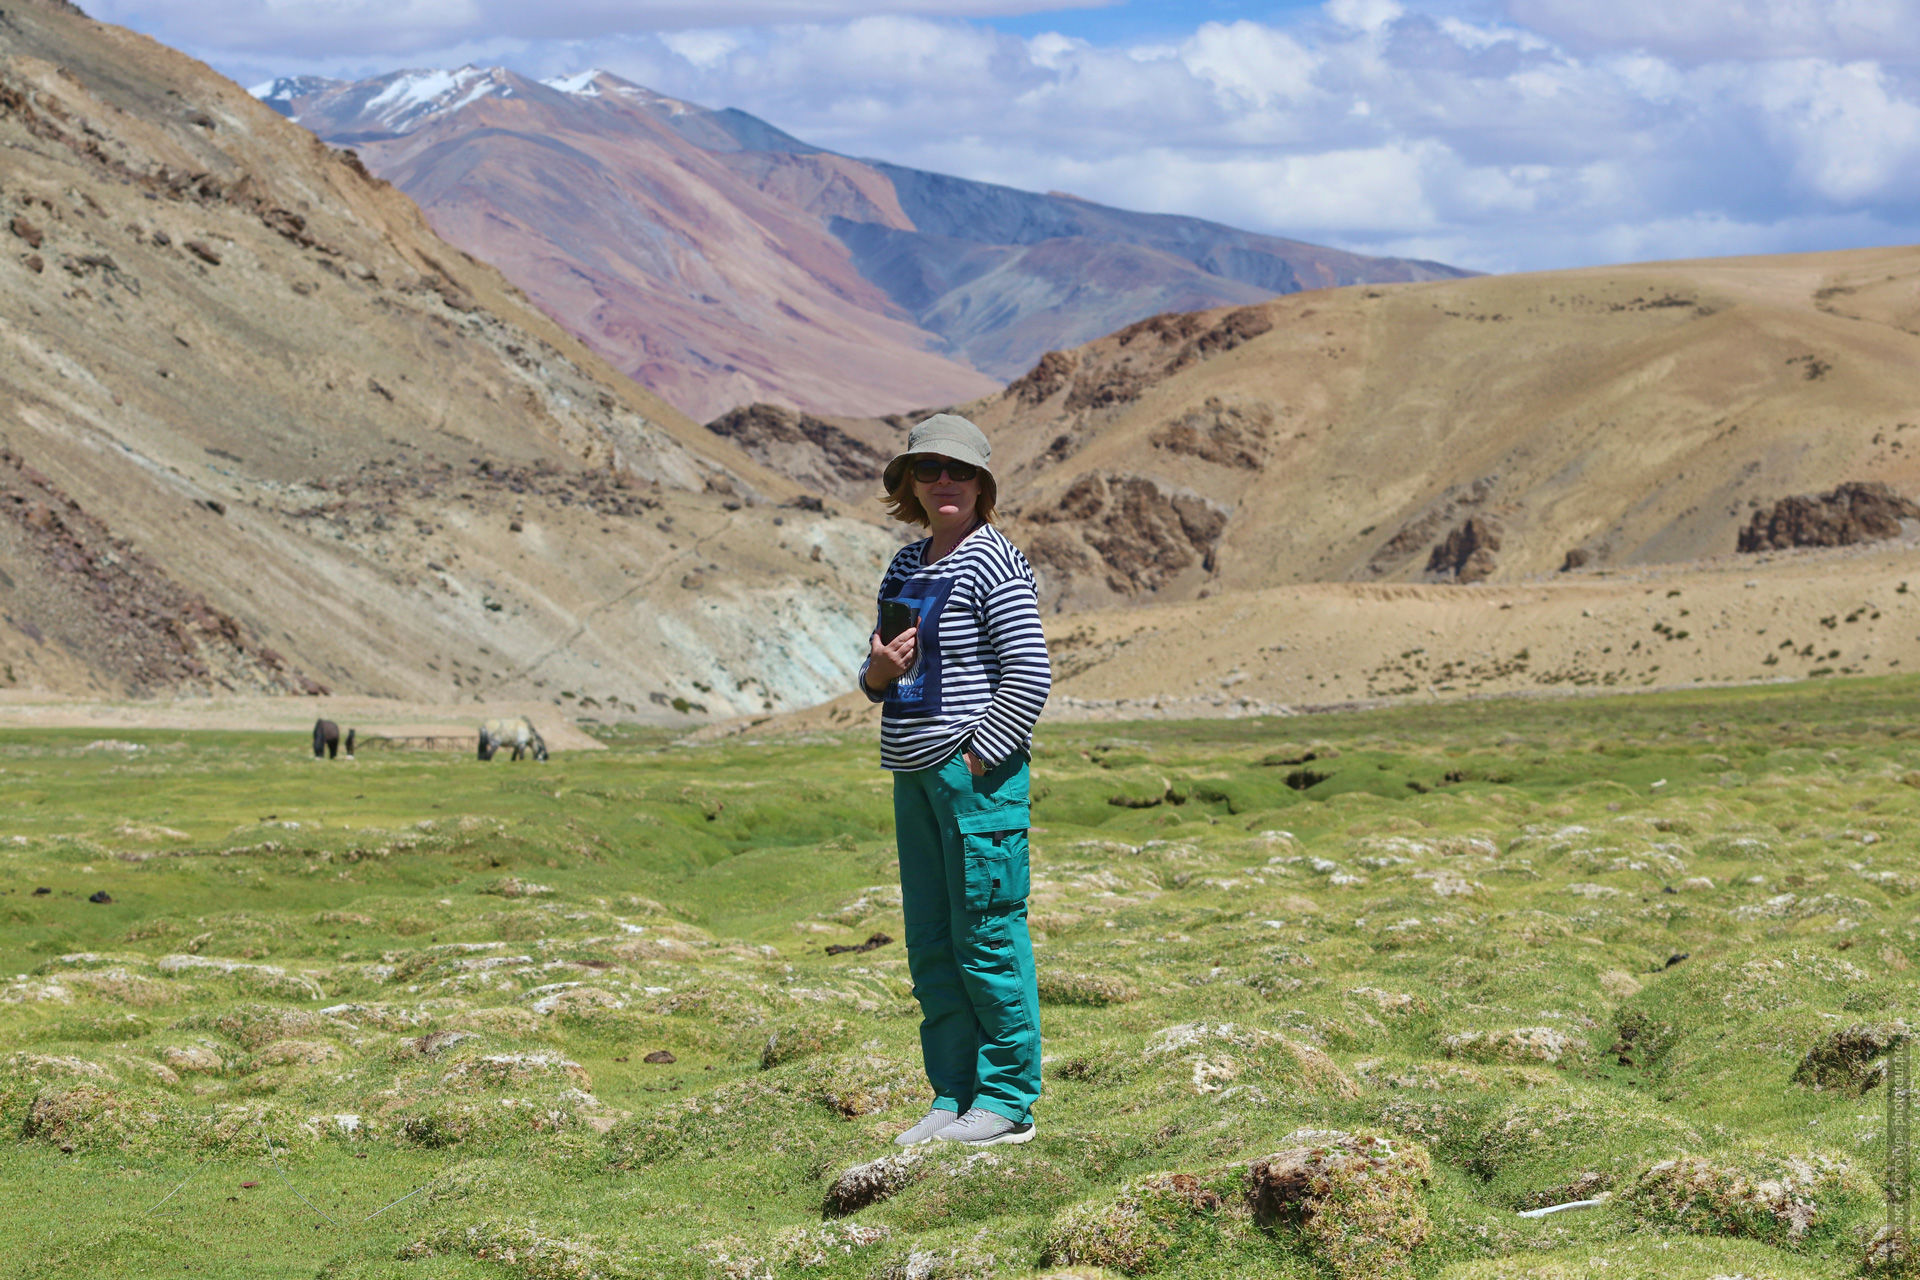 Наталья - участница путешествия Тибет Озерный-1, Ладакх, Северная Индия.